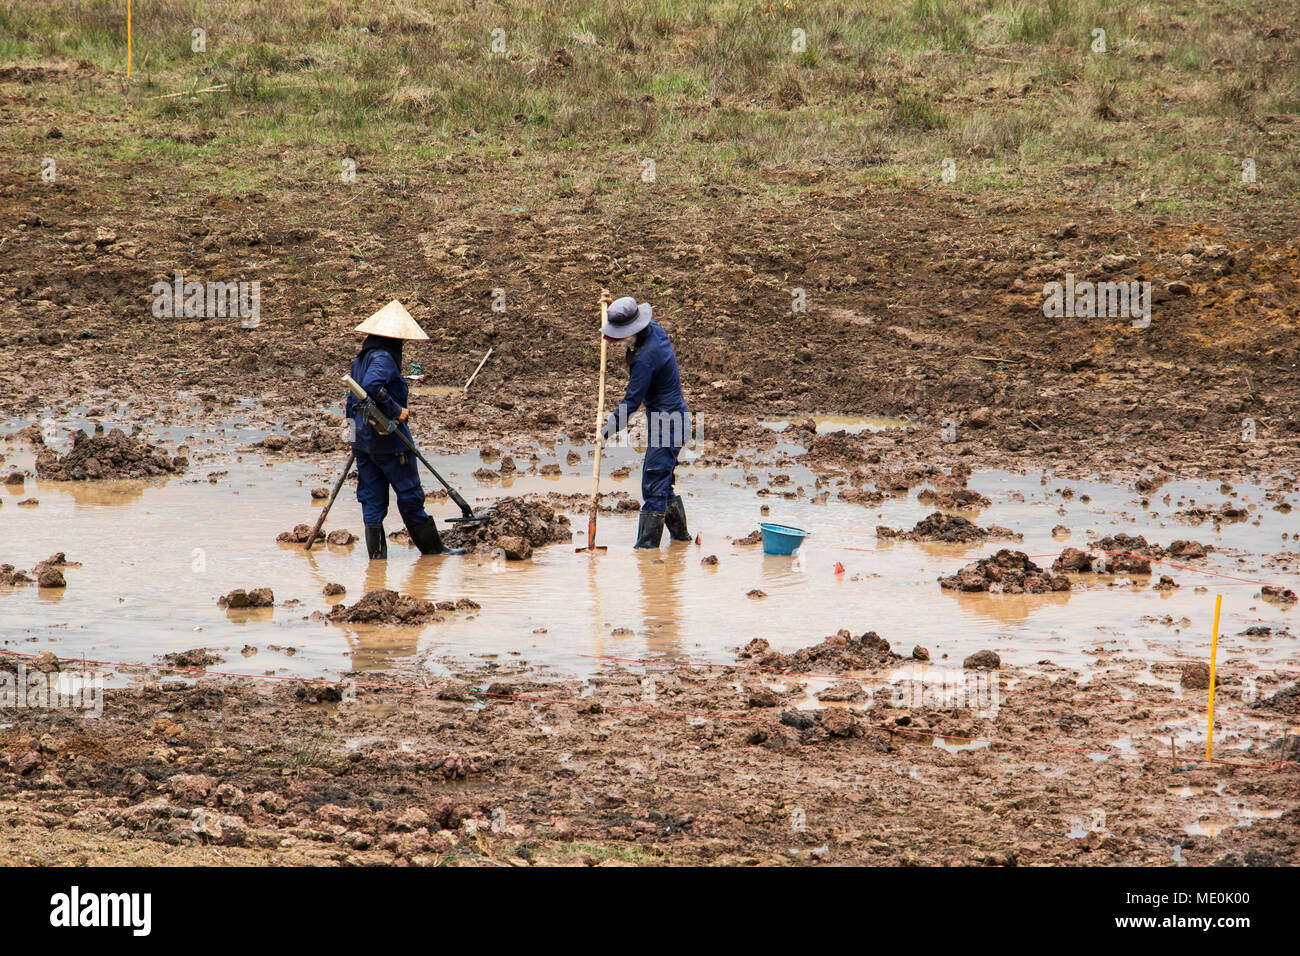 Les femmes utilisant un détecteur de métal tandis que l'enlèvement de mines terrestres dans un champ près de Phonsavan ; Xiangkhouang, Laos Banque D'Images